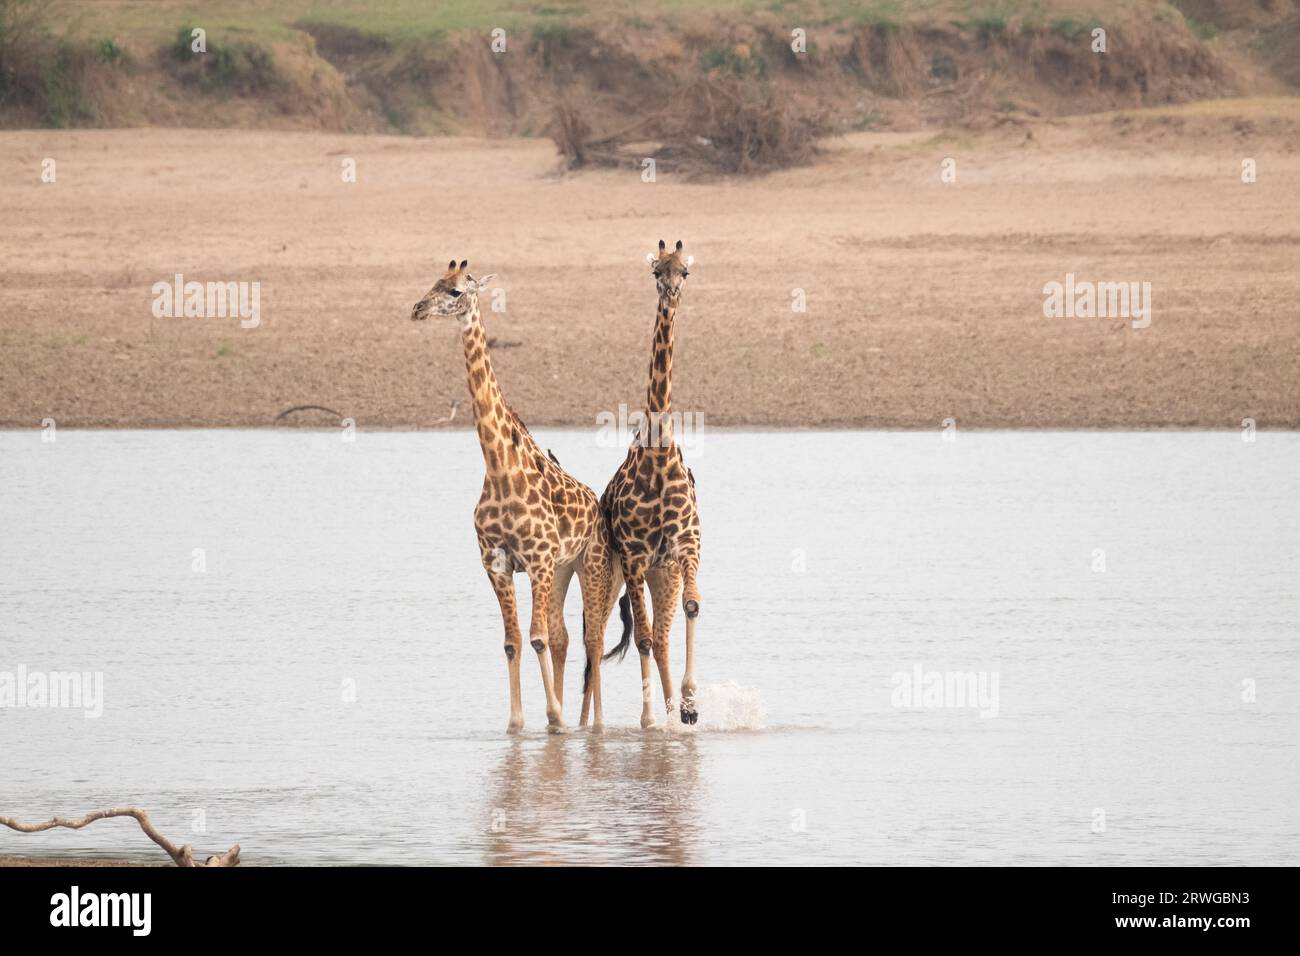 Girafe rhodésienne (Giraffa camelopardalis thornicroft), 2 animaux pataugeant dans la rivière, Parc national de Luangwa du Sud, Zambie, Afrique Banque D'Images